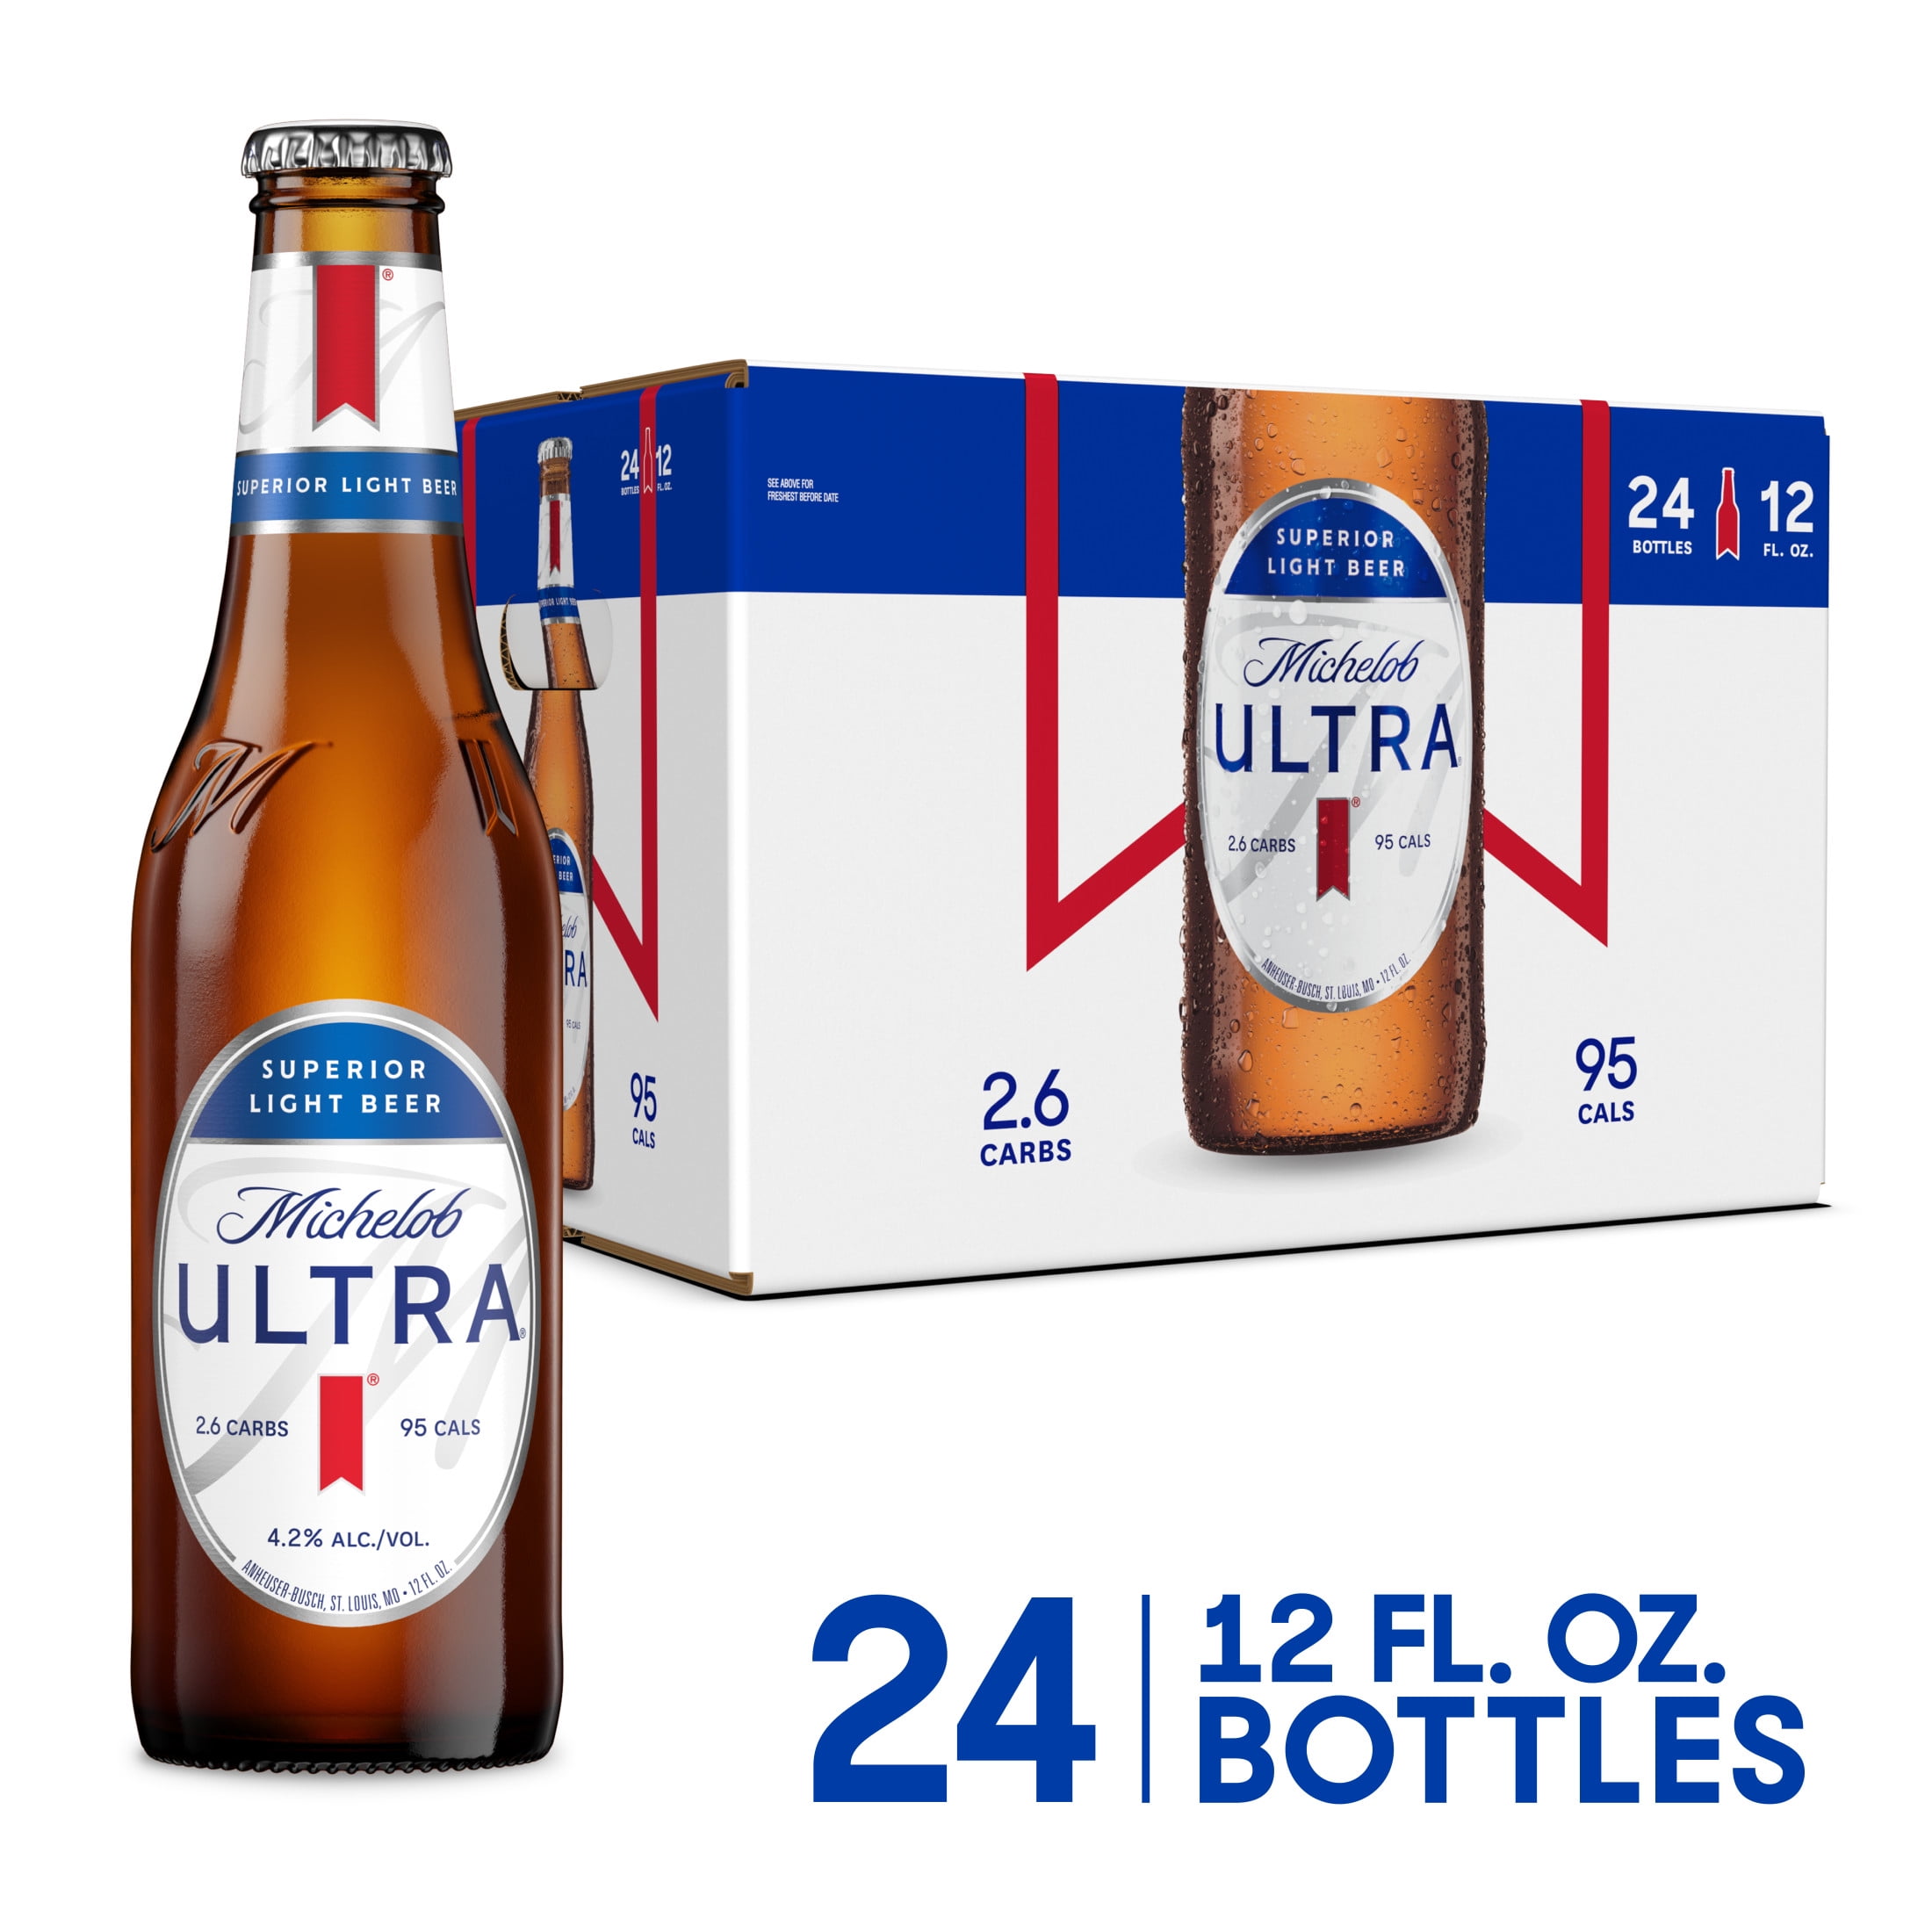 forskel journalist Wedge Michelob ULTRA Light Beer, 24 Pack Beer, 12 fl oz Bottles, 4.2% ABV,  Domestic - Walmart.com